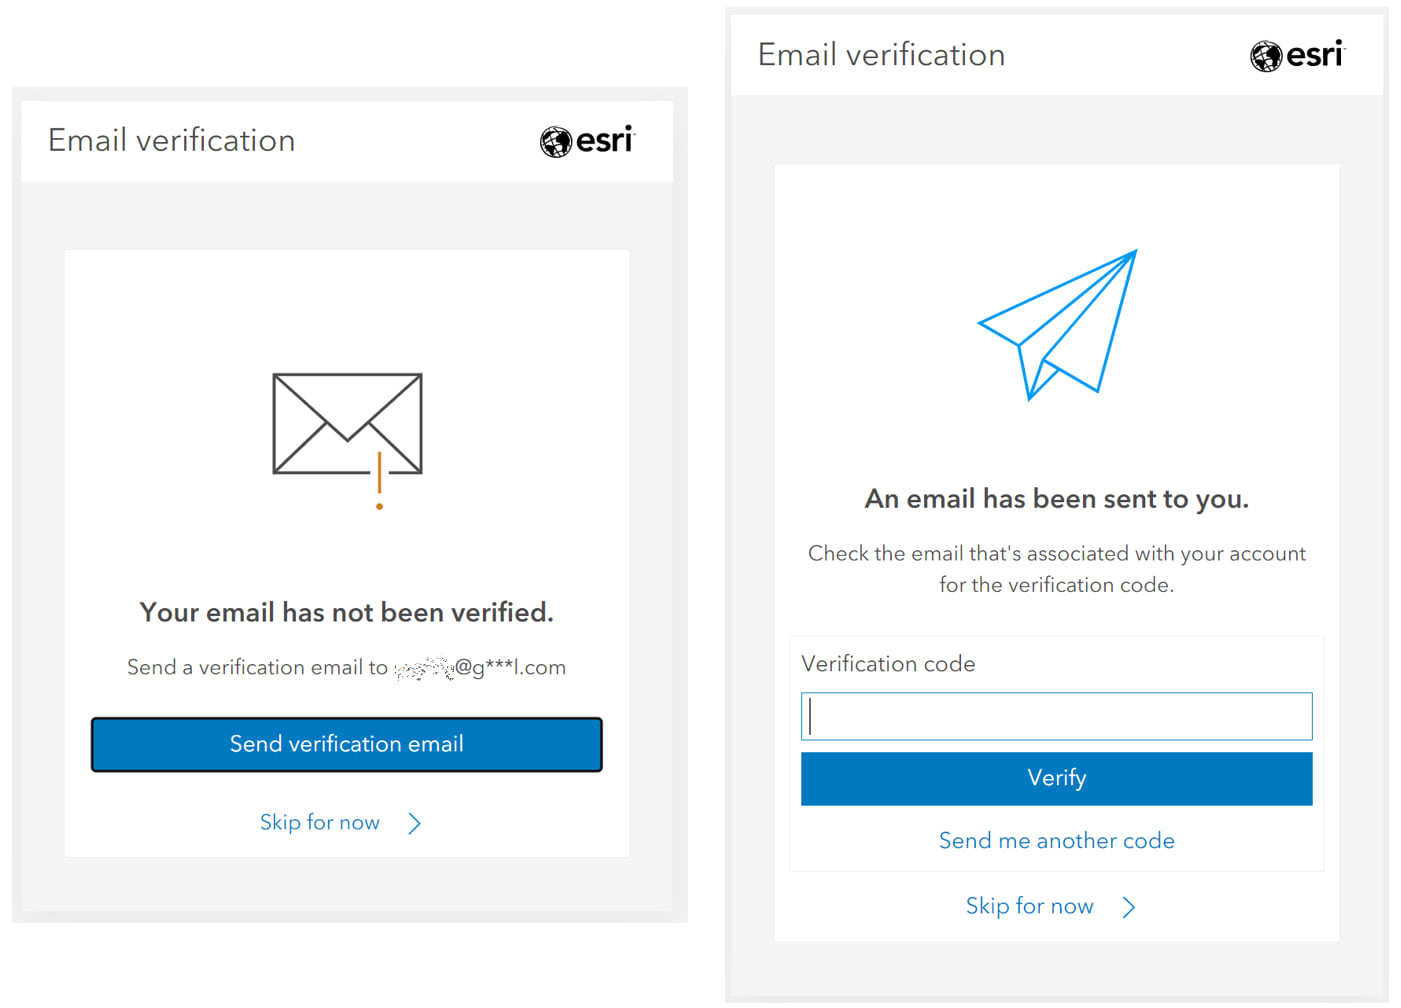 Send verification email > Enter verification code > Verify